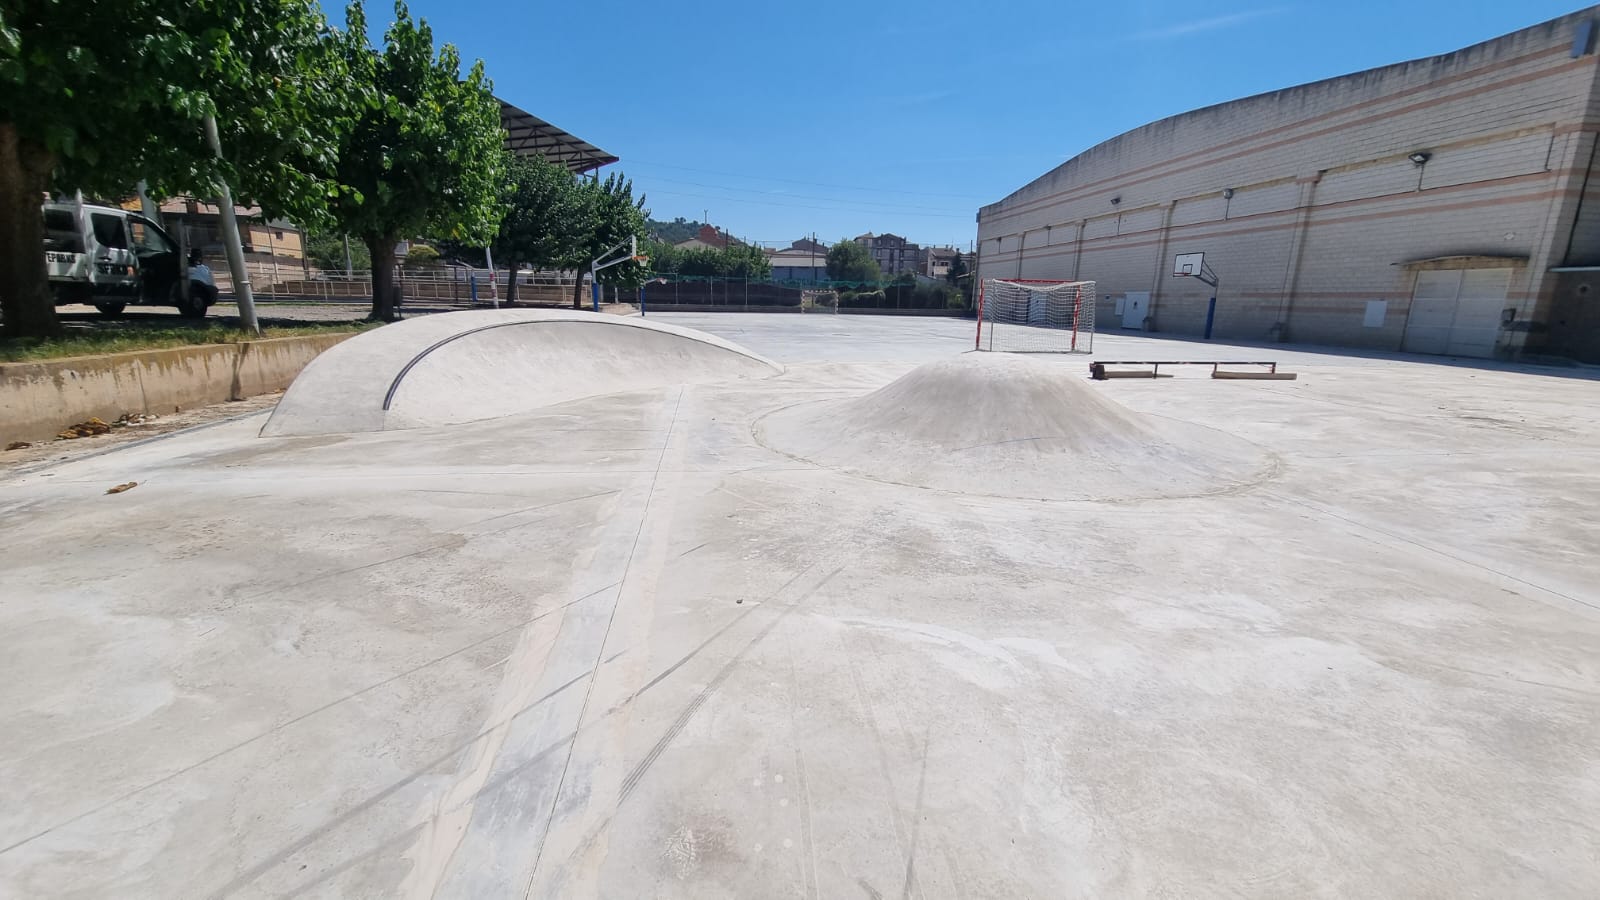 Nova àrea de skate park